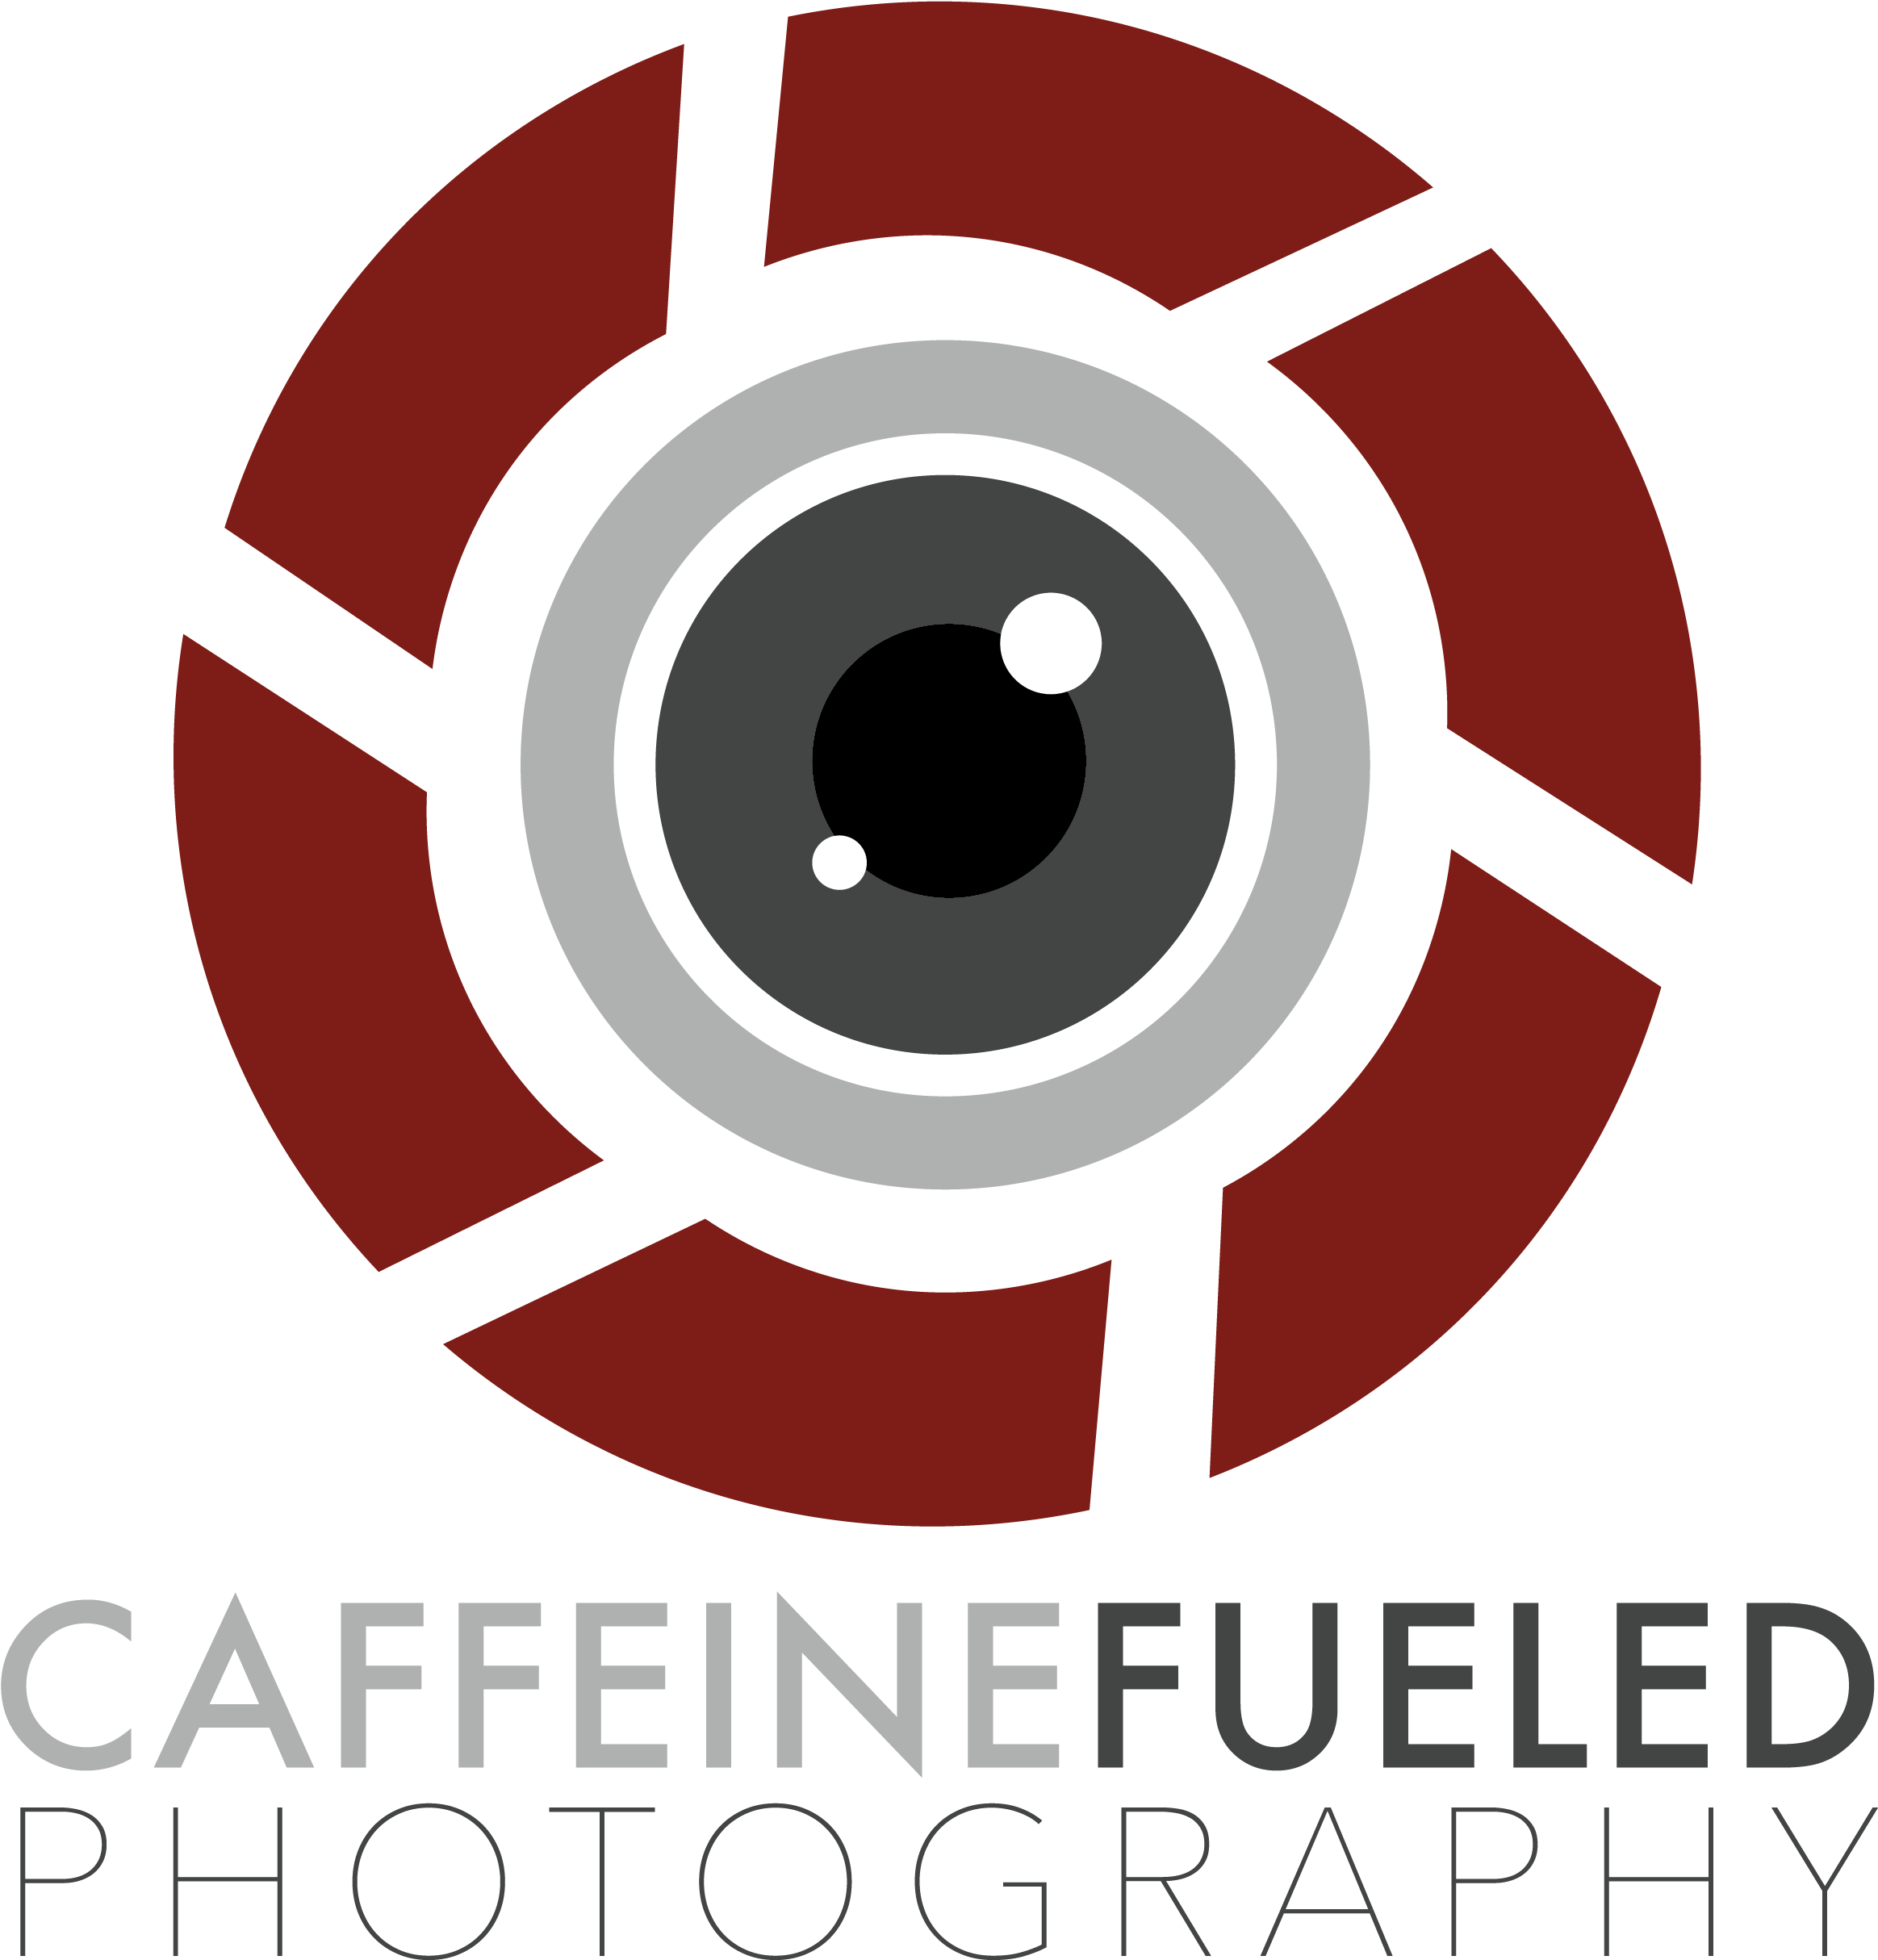 Cafffueledphoto Logo-01 - Photography Logo Without Background (2800x2635)